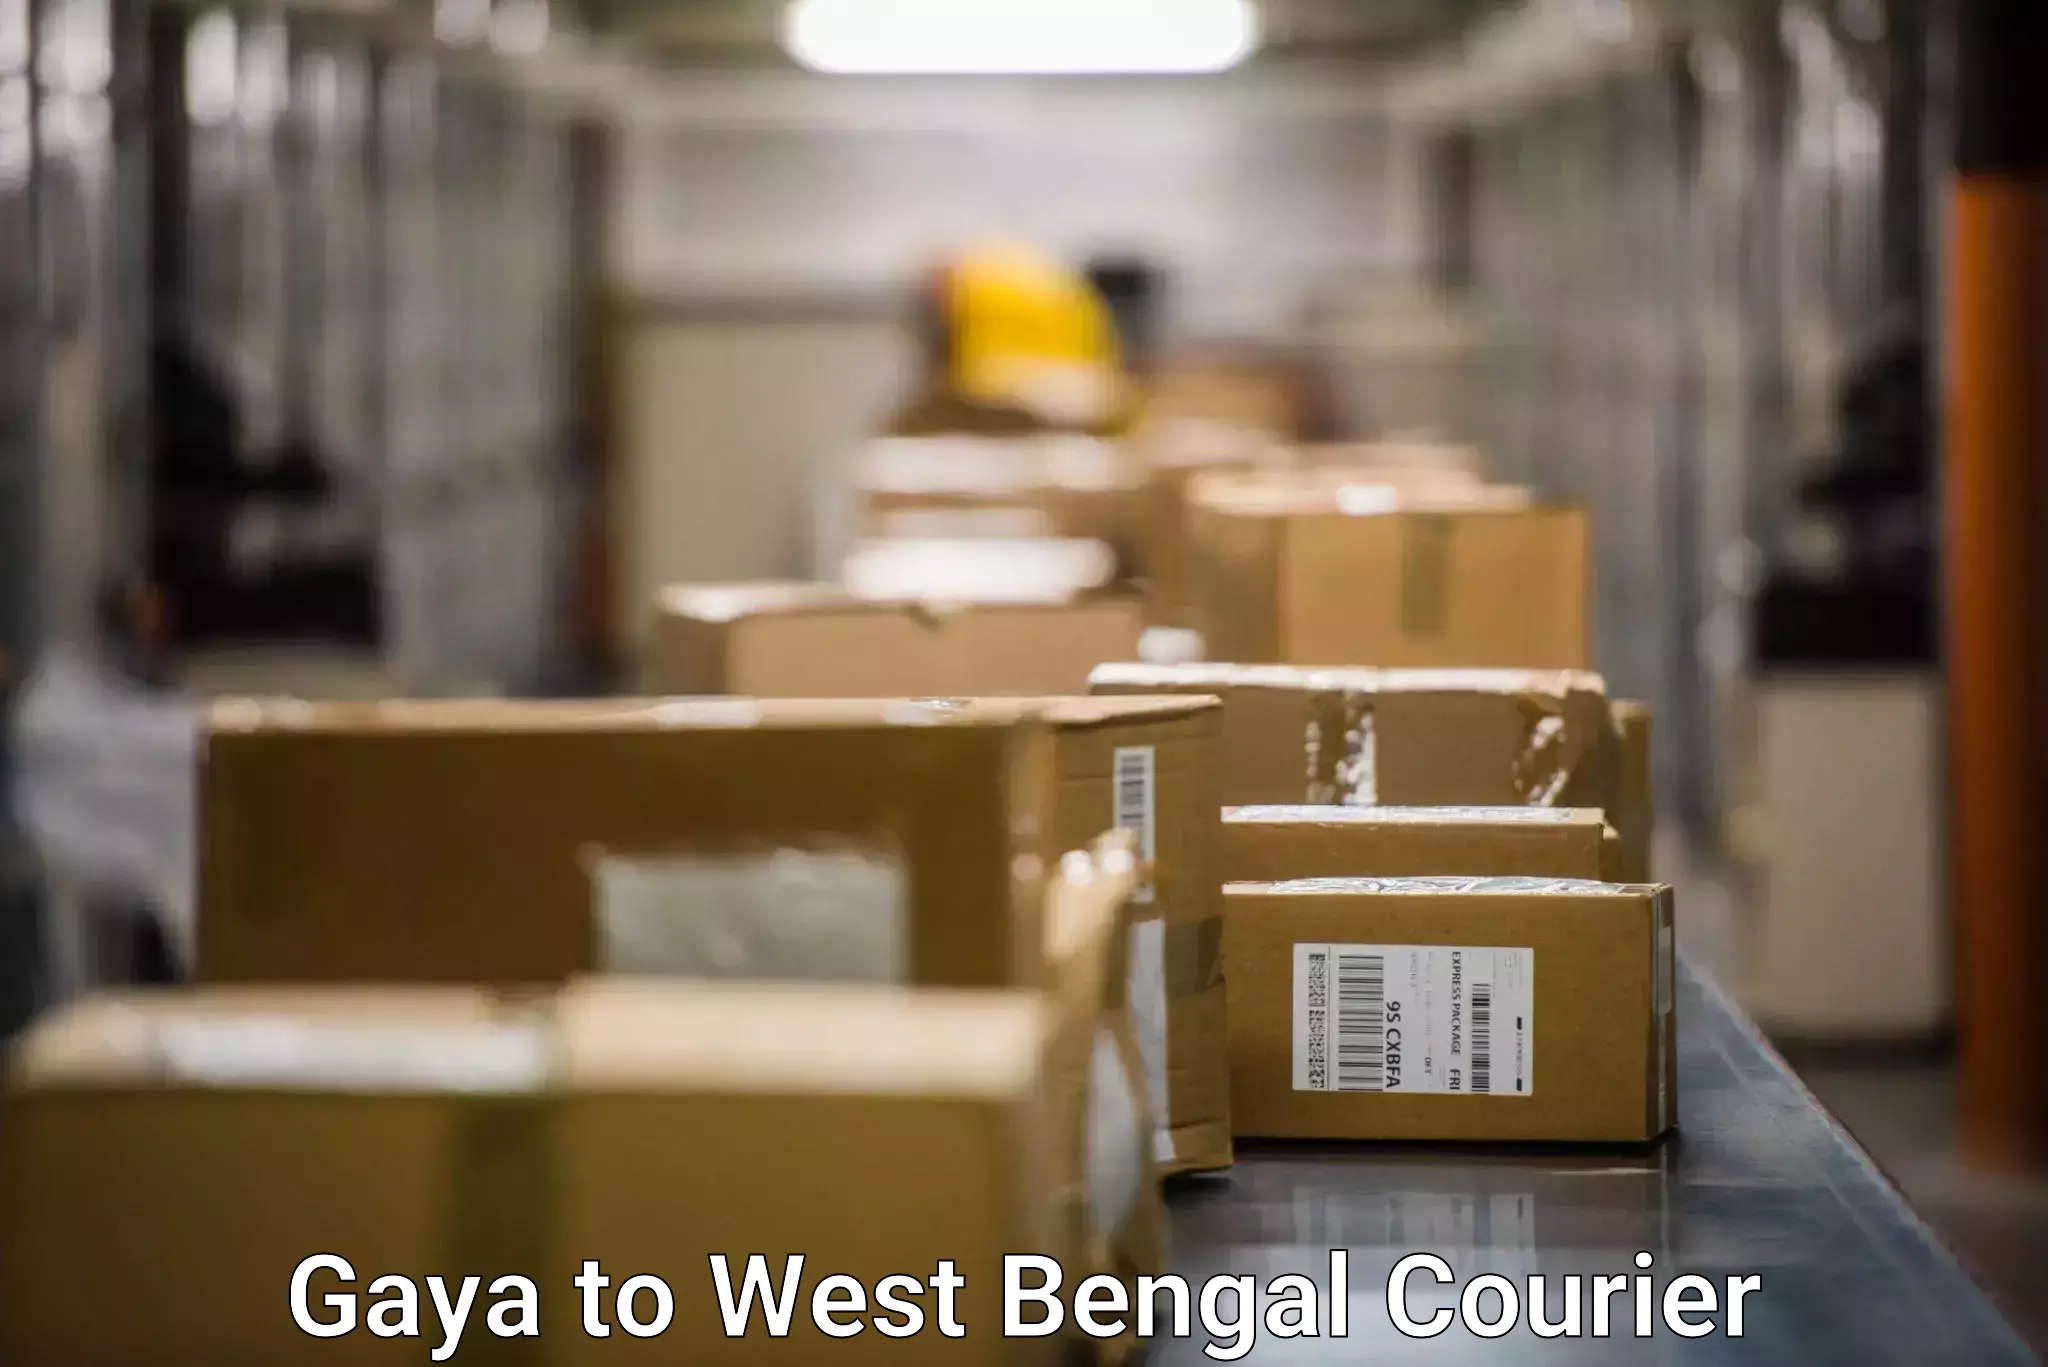 High-capacity courier solutions Gaya to Manglamaro